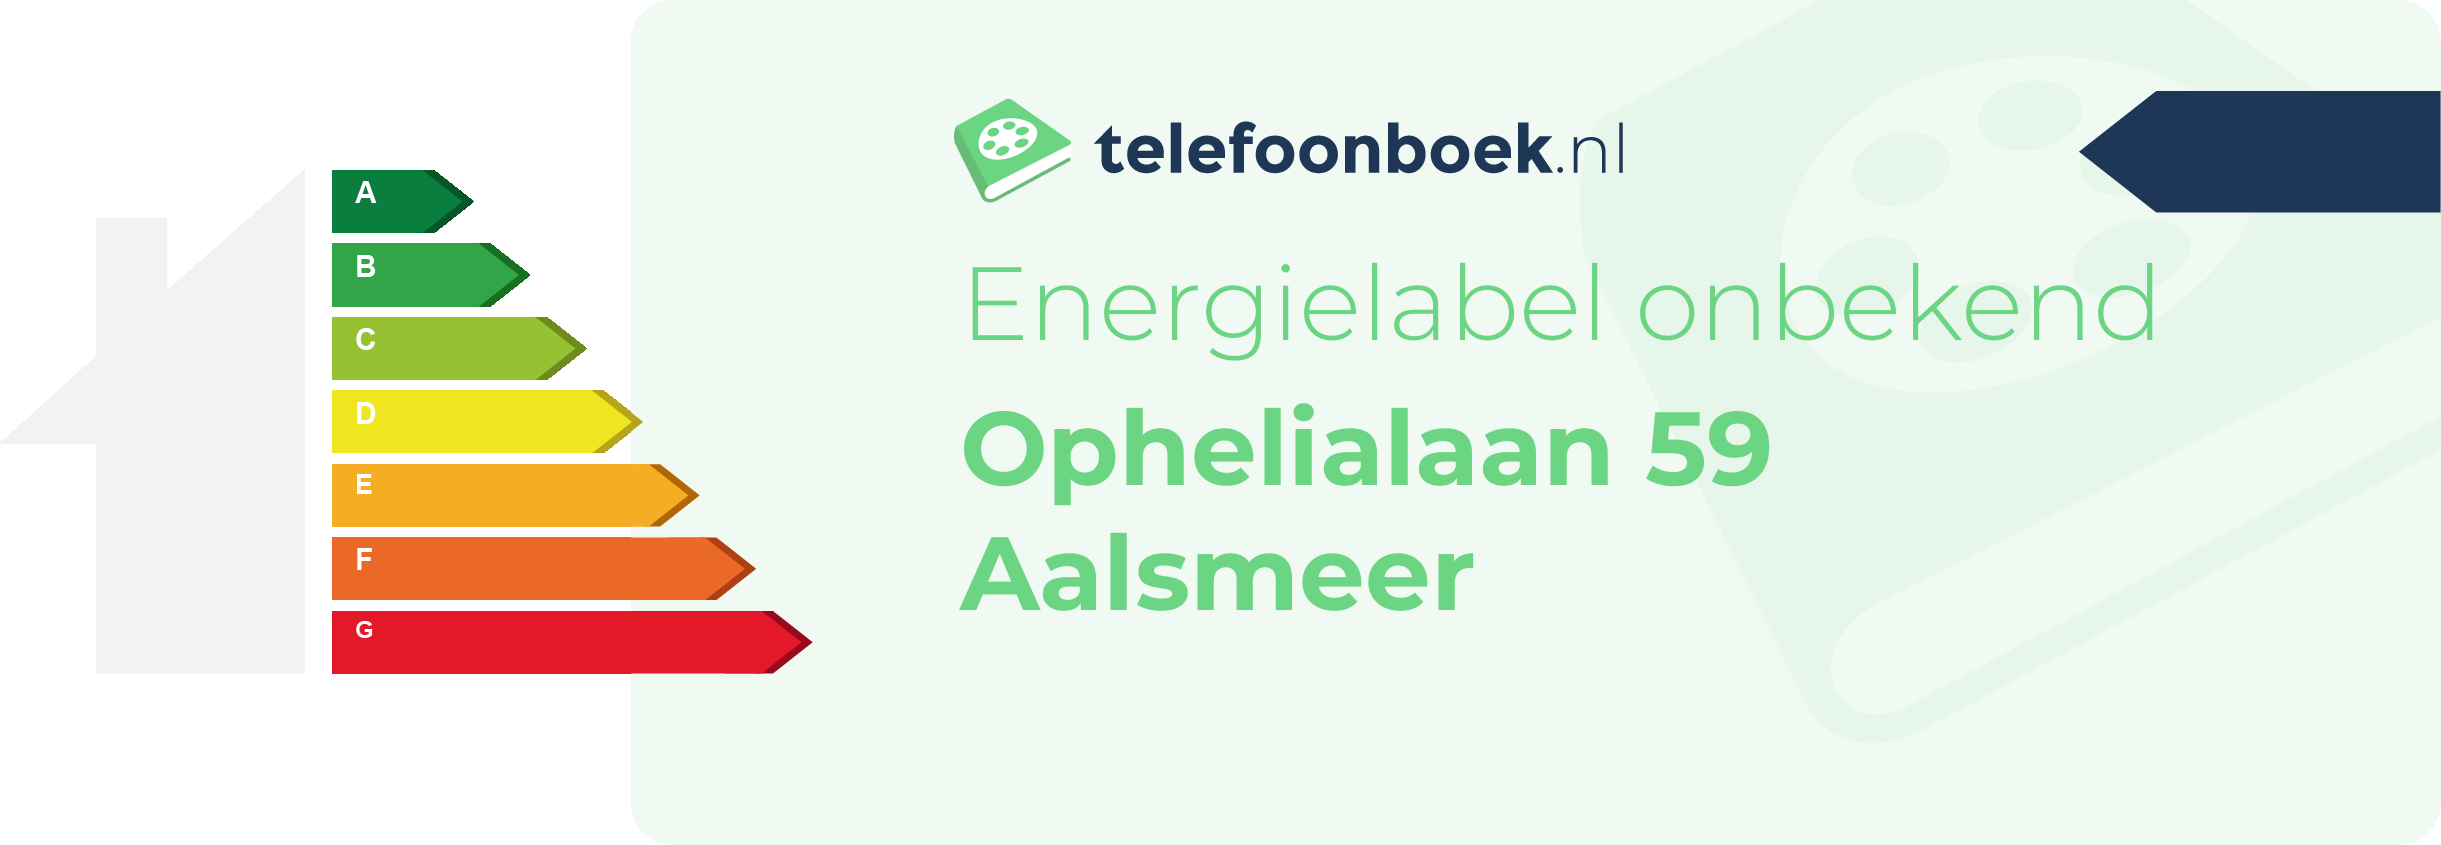 Energielabel Ophelialaan 59 Aalsmeer